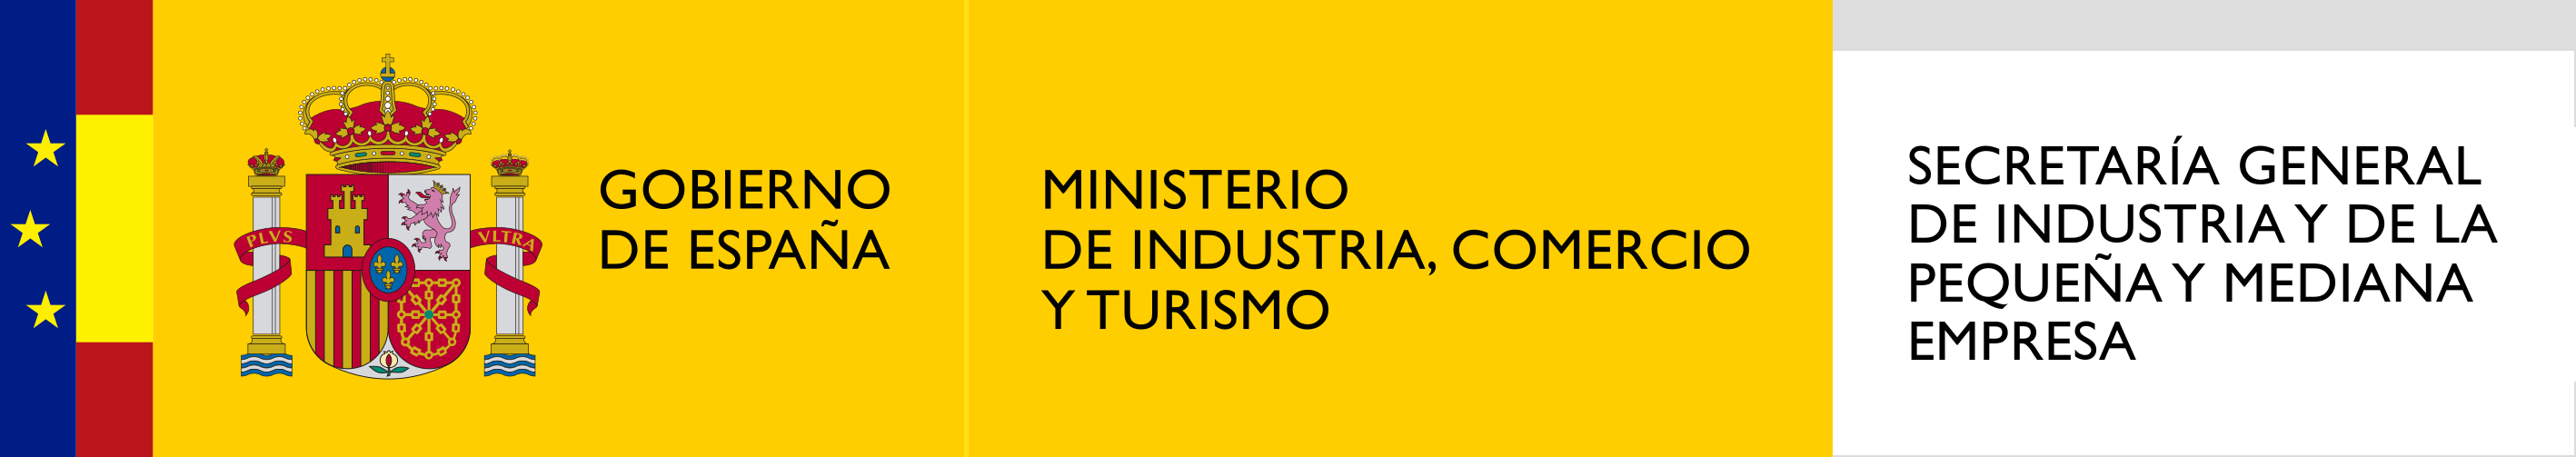  MINCOTUR - Secretaría General de Industria y de la Pequeña y Mediana Empresa | AEI